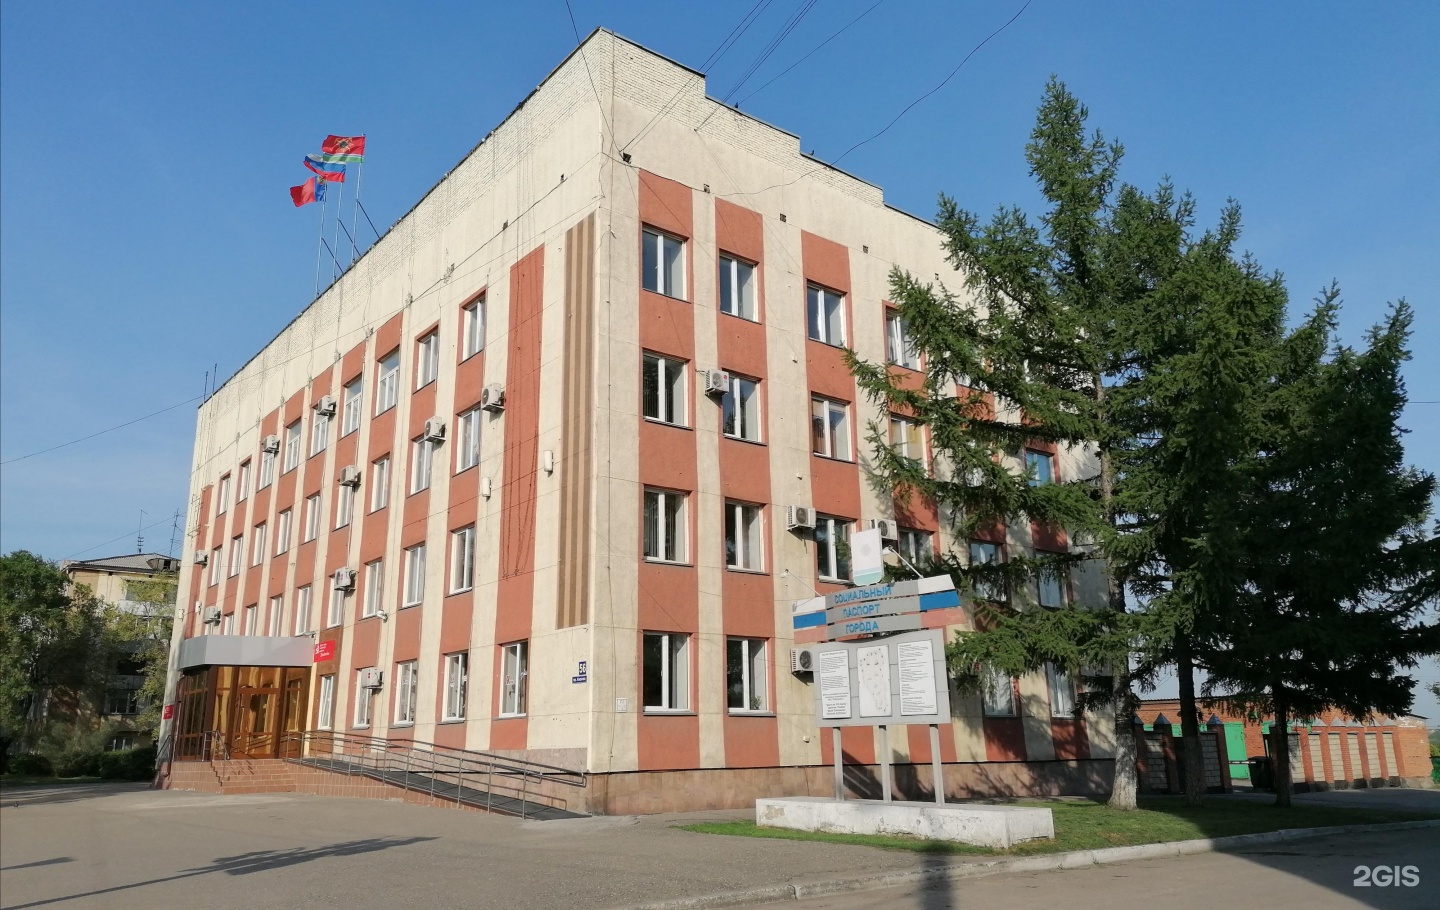 Сайт администрации города Ленинска-Кузнецкого